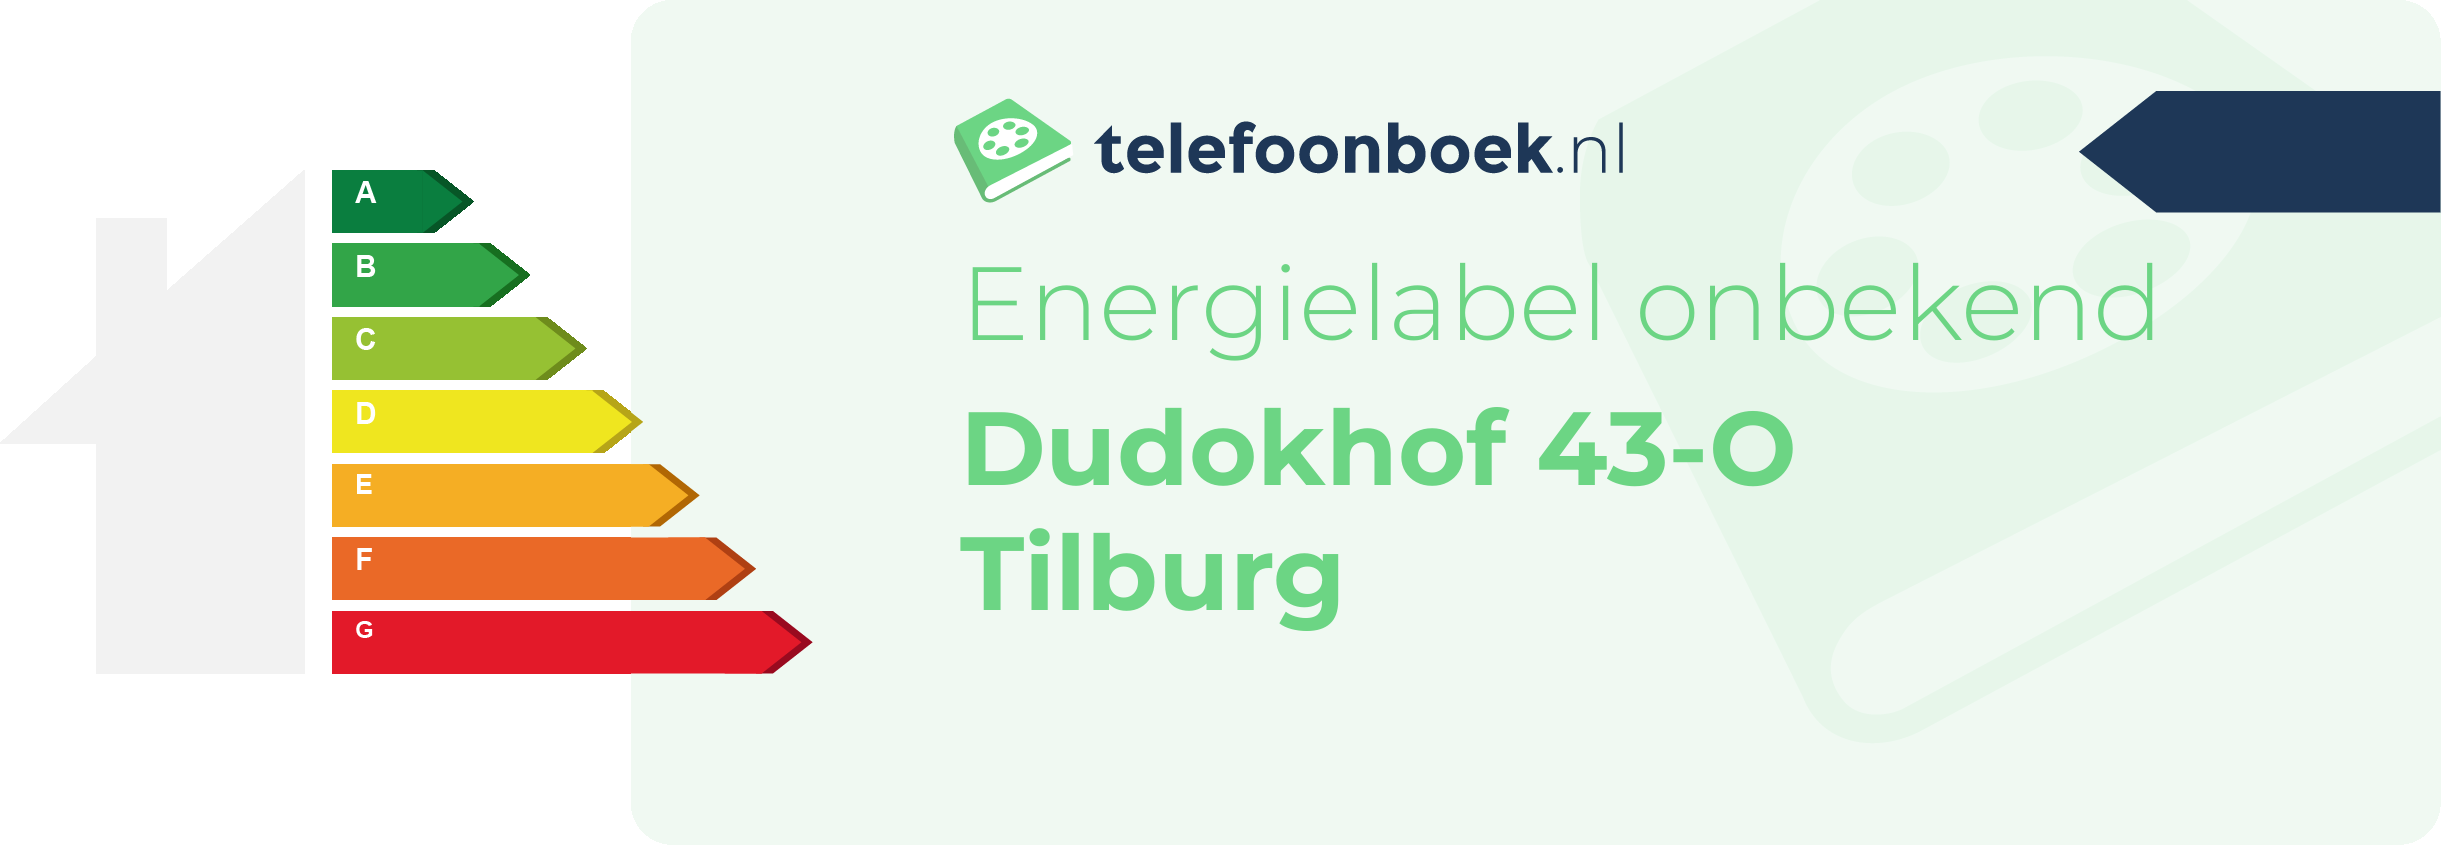 Energielabel Dudokhof 43-O Tilburg